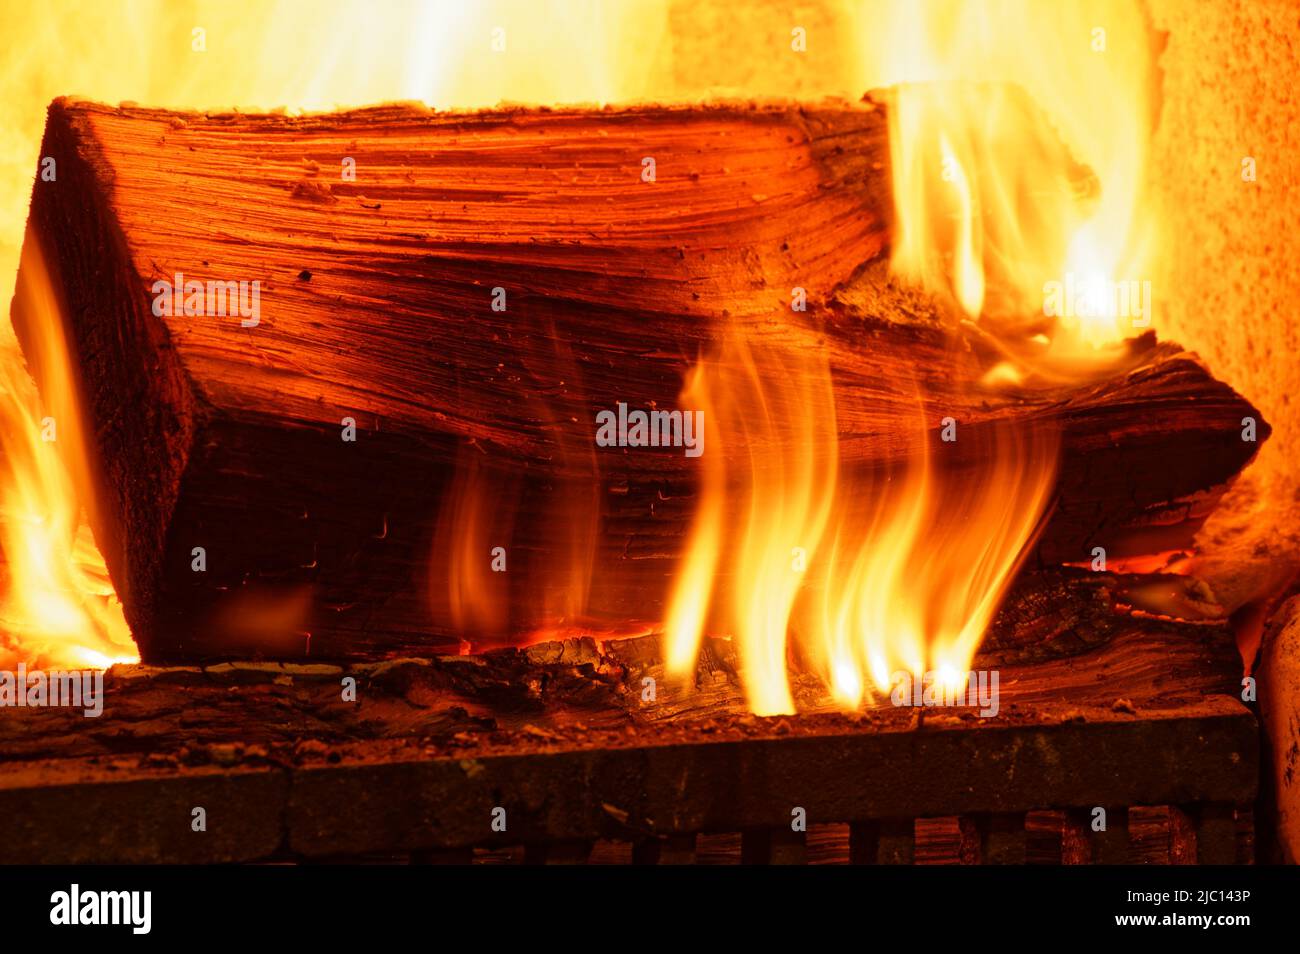 Un fuego abierto proporciona calor invernal, sus llamas bailando sobre la madera en llamas Foto de stock